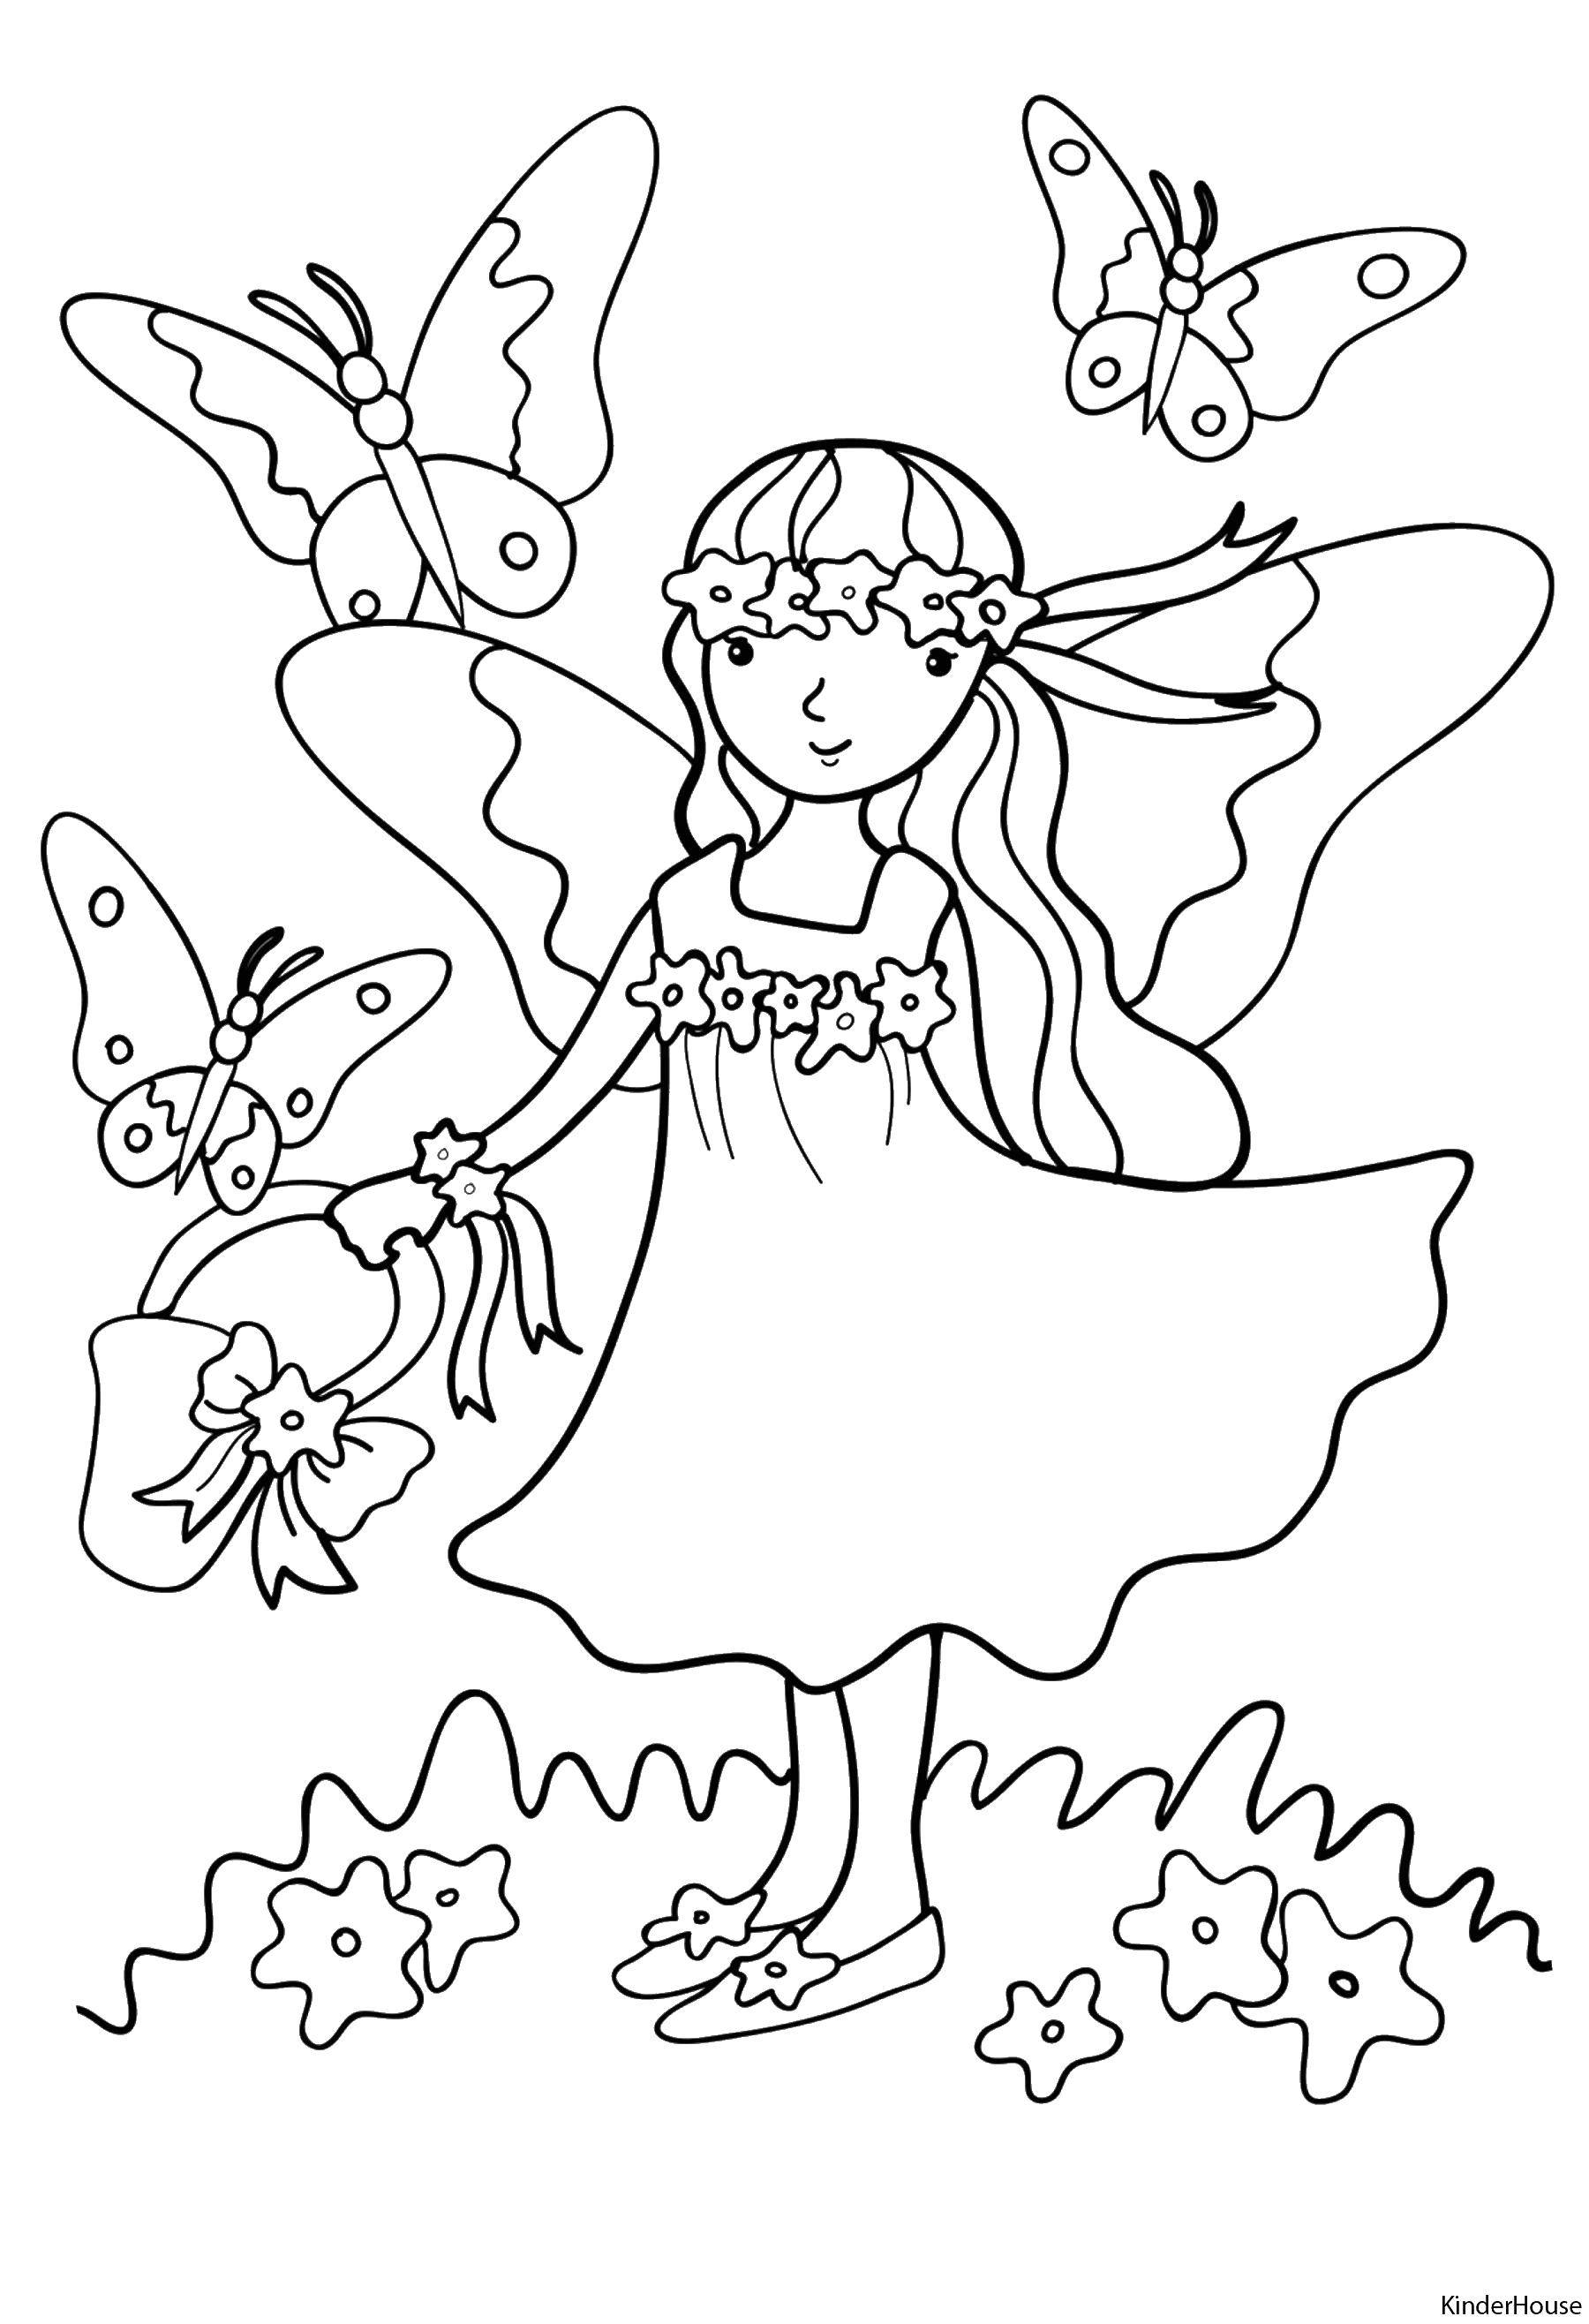 Название: Раскраска Девочка и бабочки. Категория: Для девочек. Теги: девочка, платье, корзинка, бабочки.